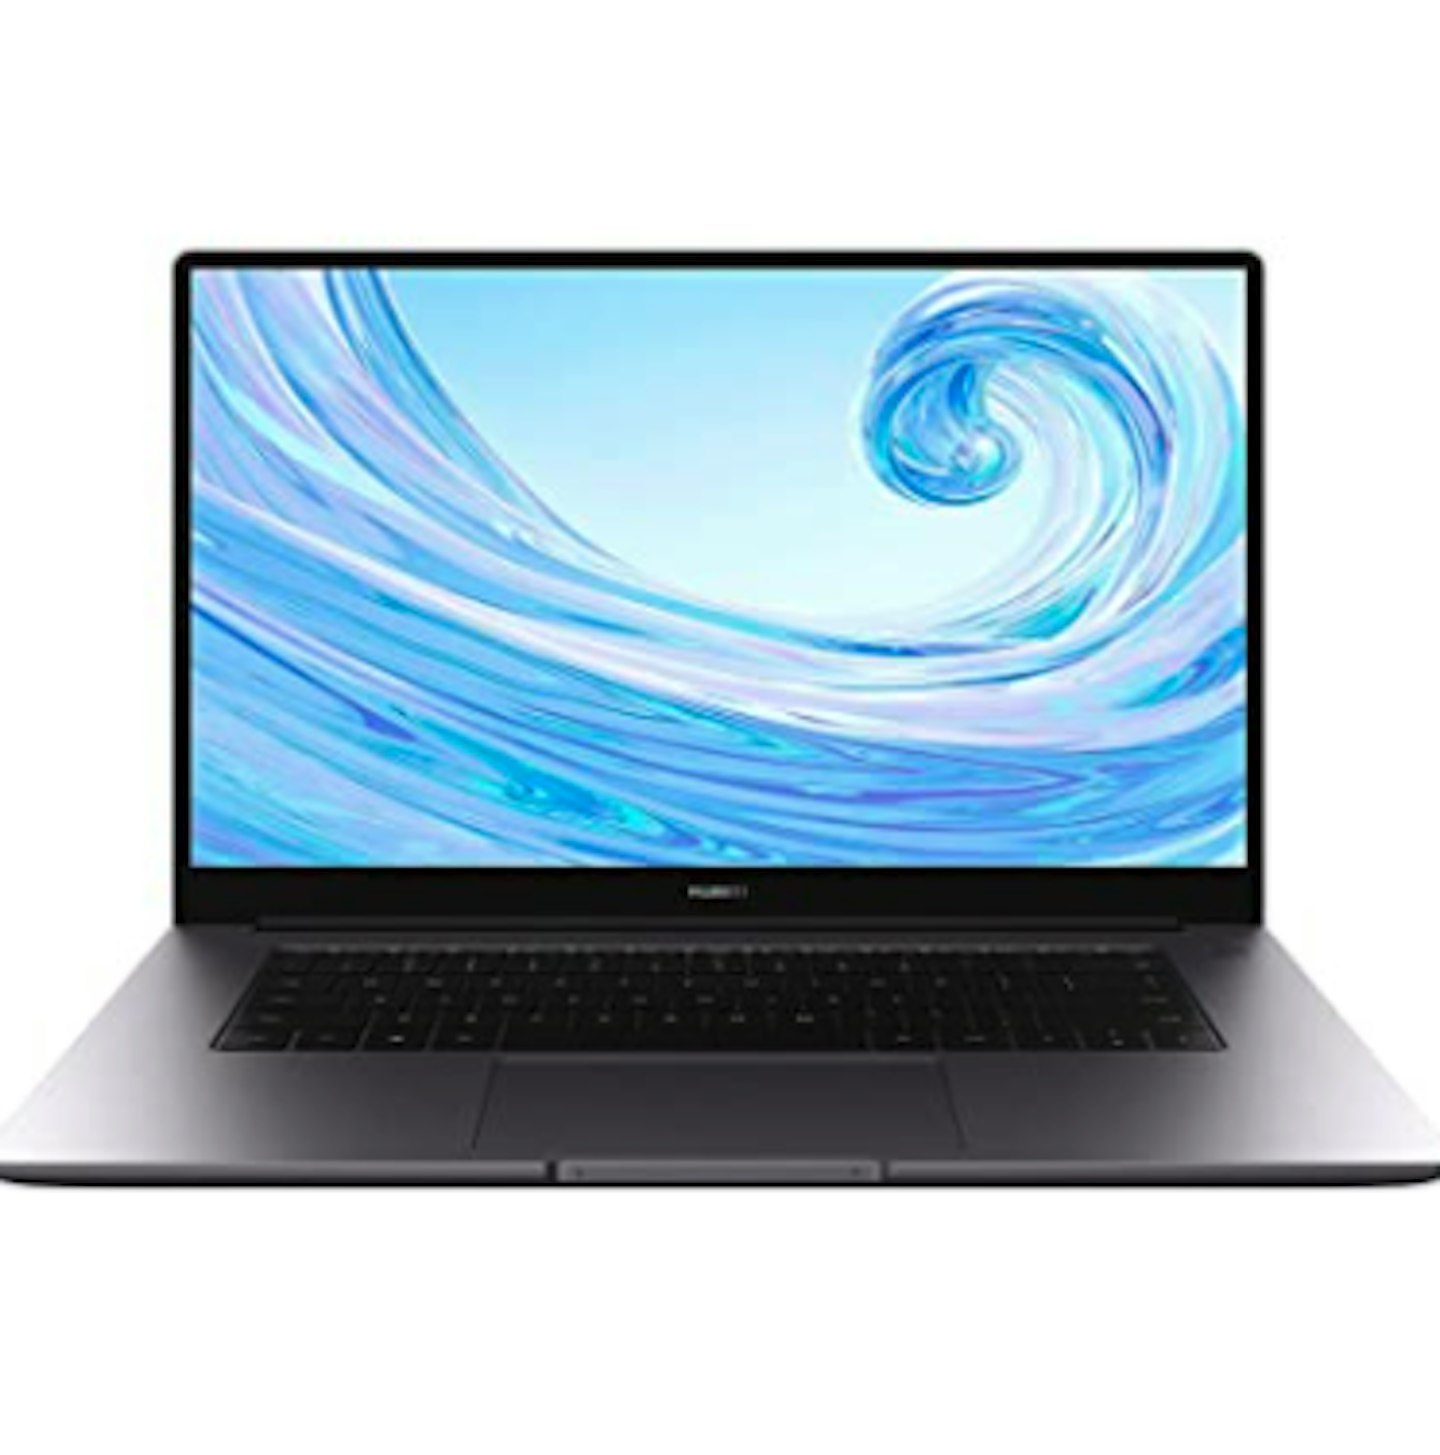 HUAWEI MateBook D 15 - 15.6 Inch Laptop